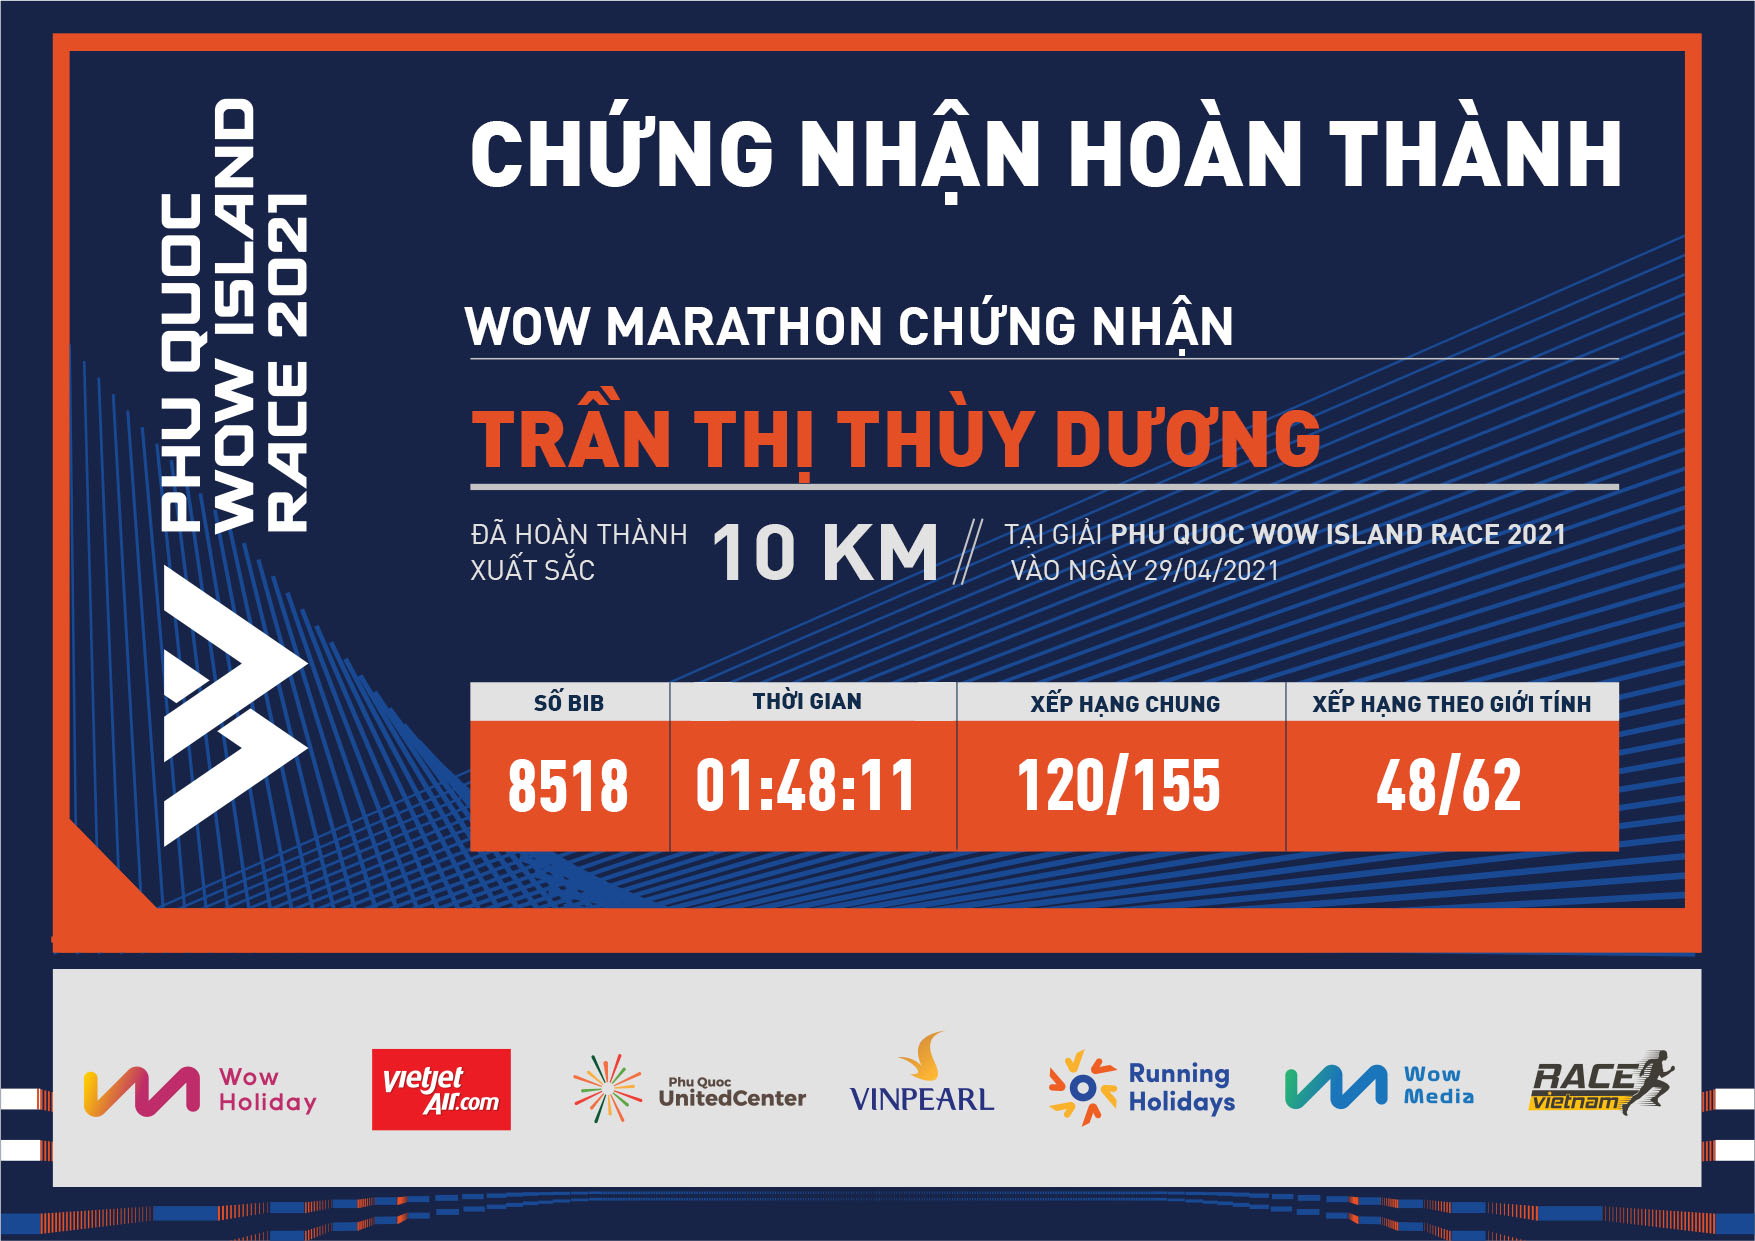 8518 - Trần Thị Thùy Dương